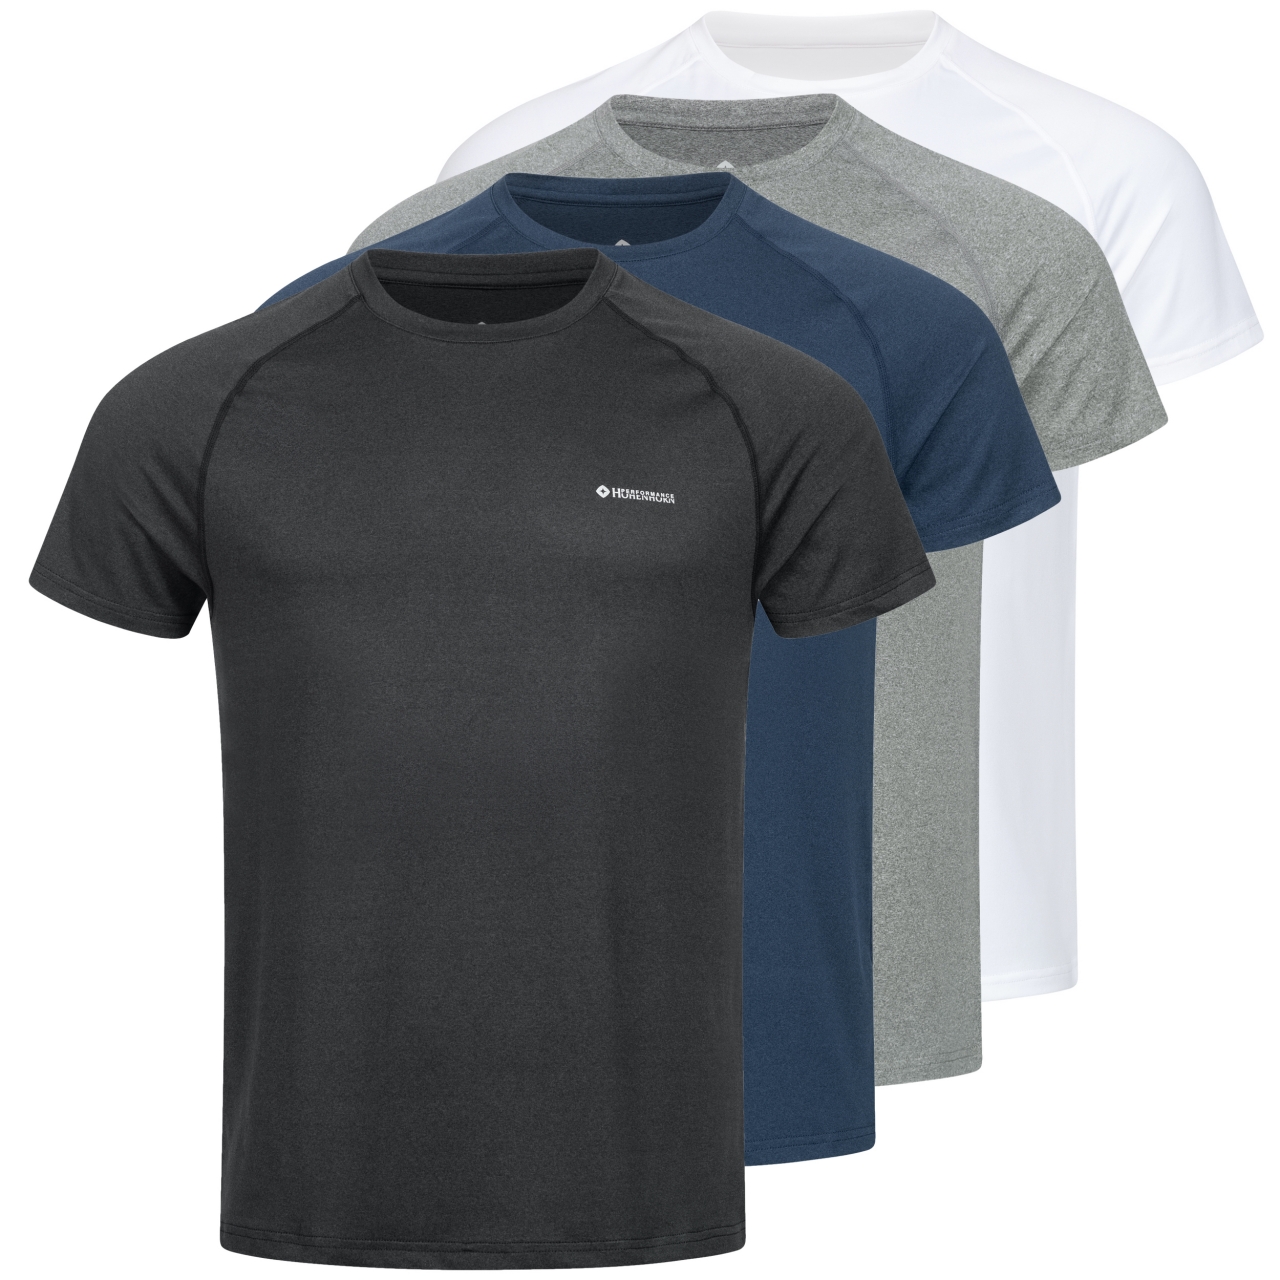 Höhenhorn Kannin Herren T-Shirt Laufshirt Fitness aus Recyceltem Material 3XL Dunkelgrau von Höhenhorn